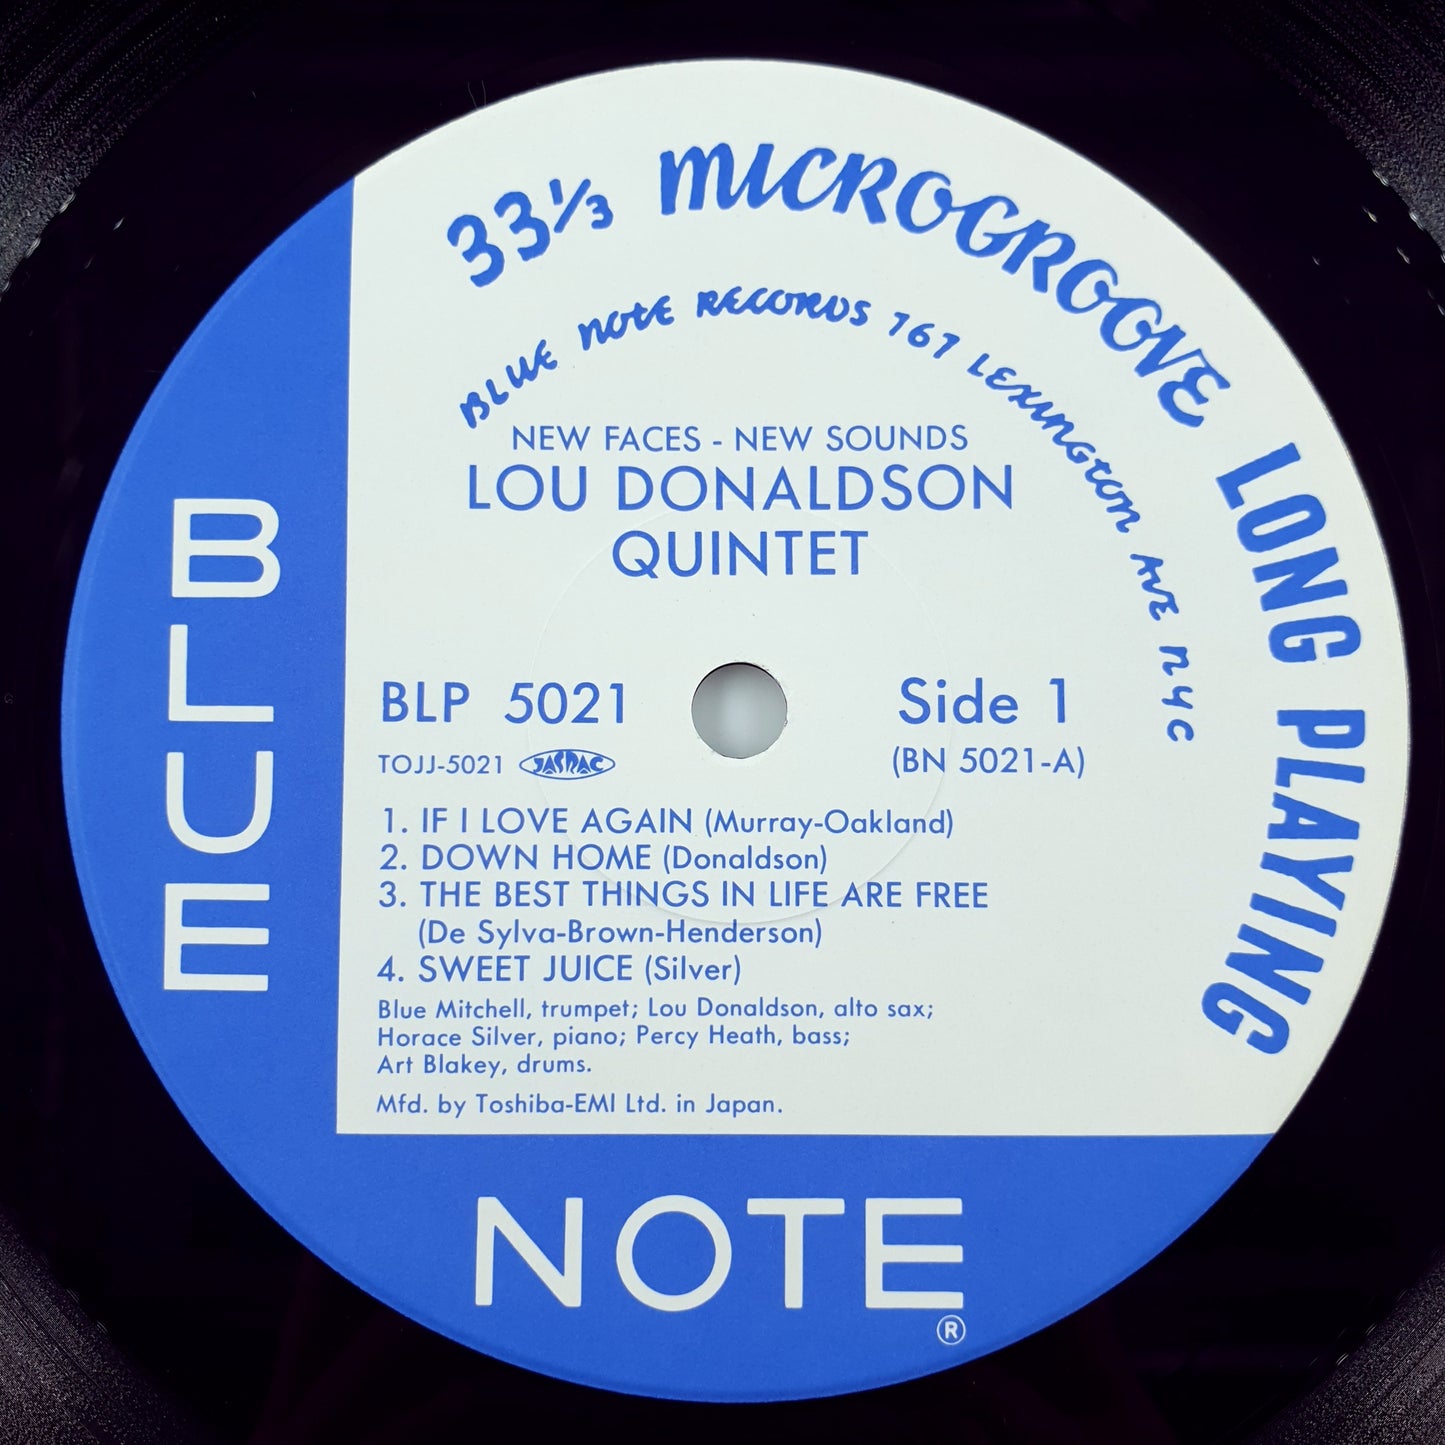 Lou Donaldson – New Faces – New Sounds